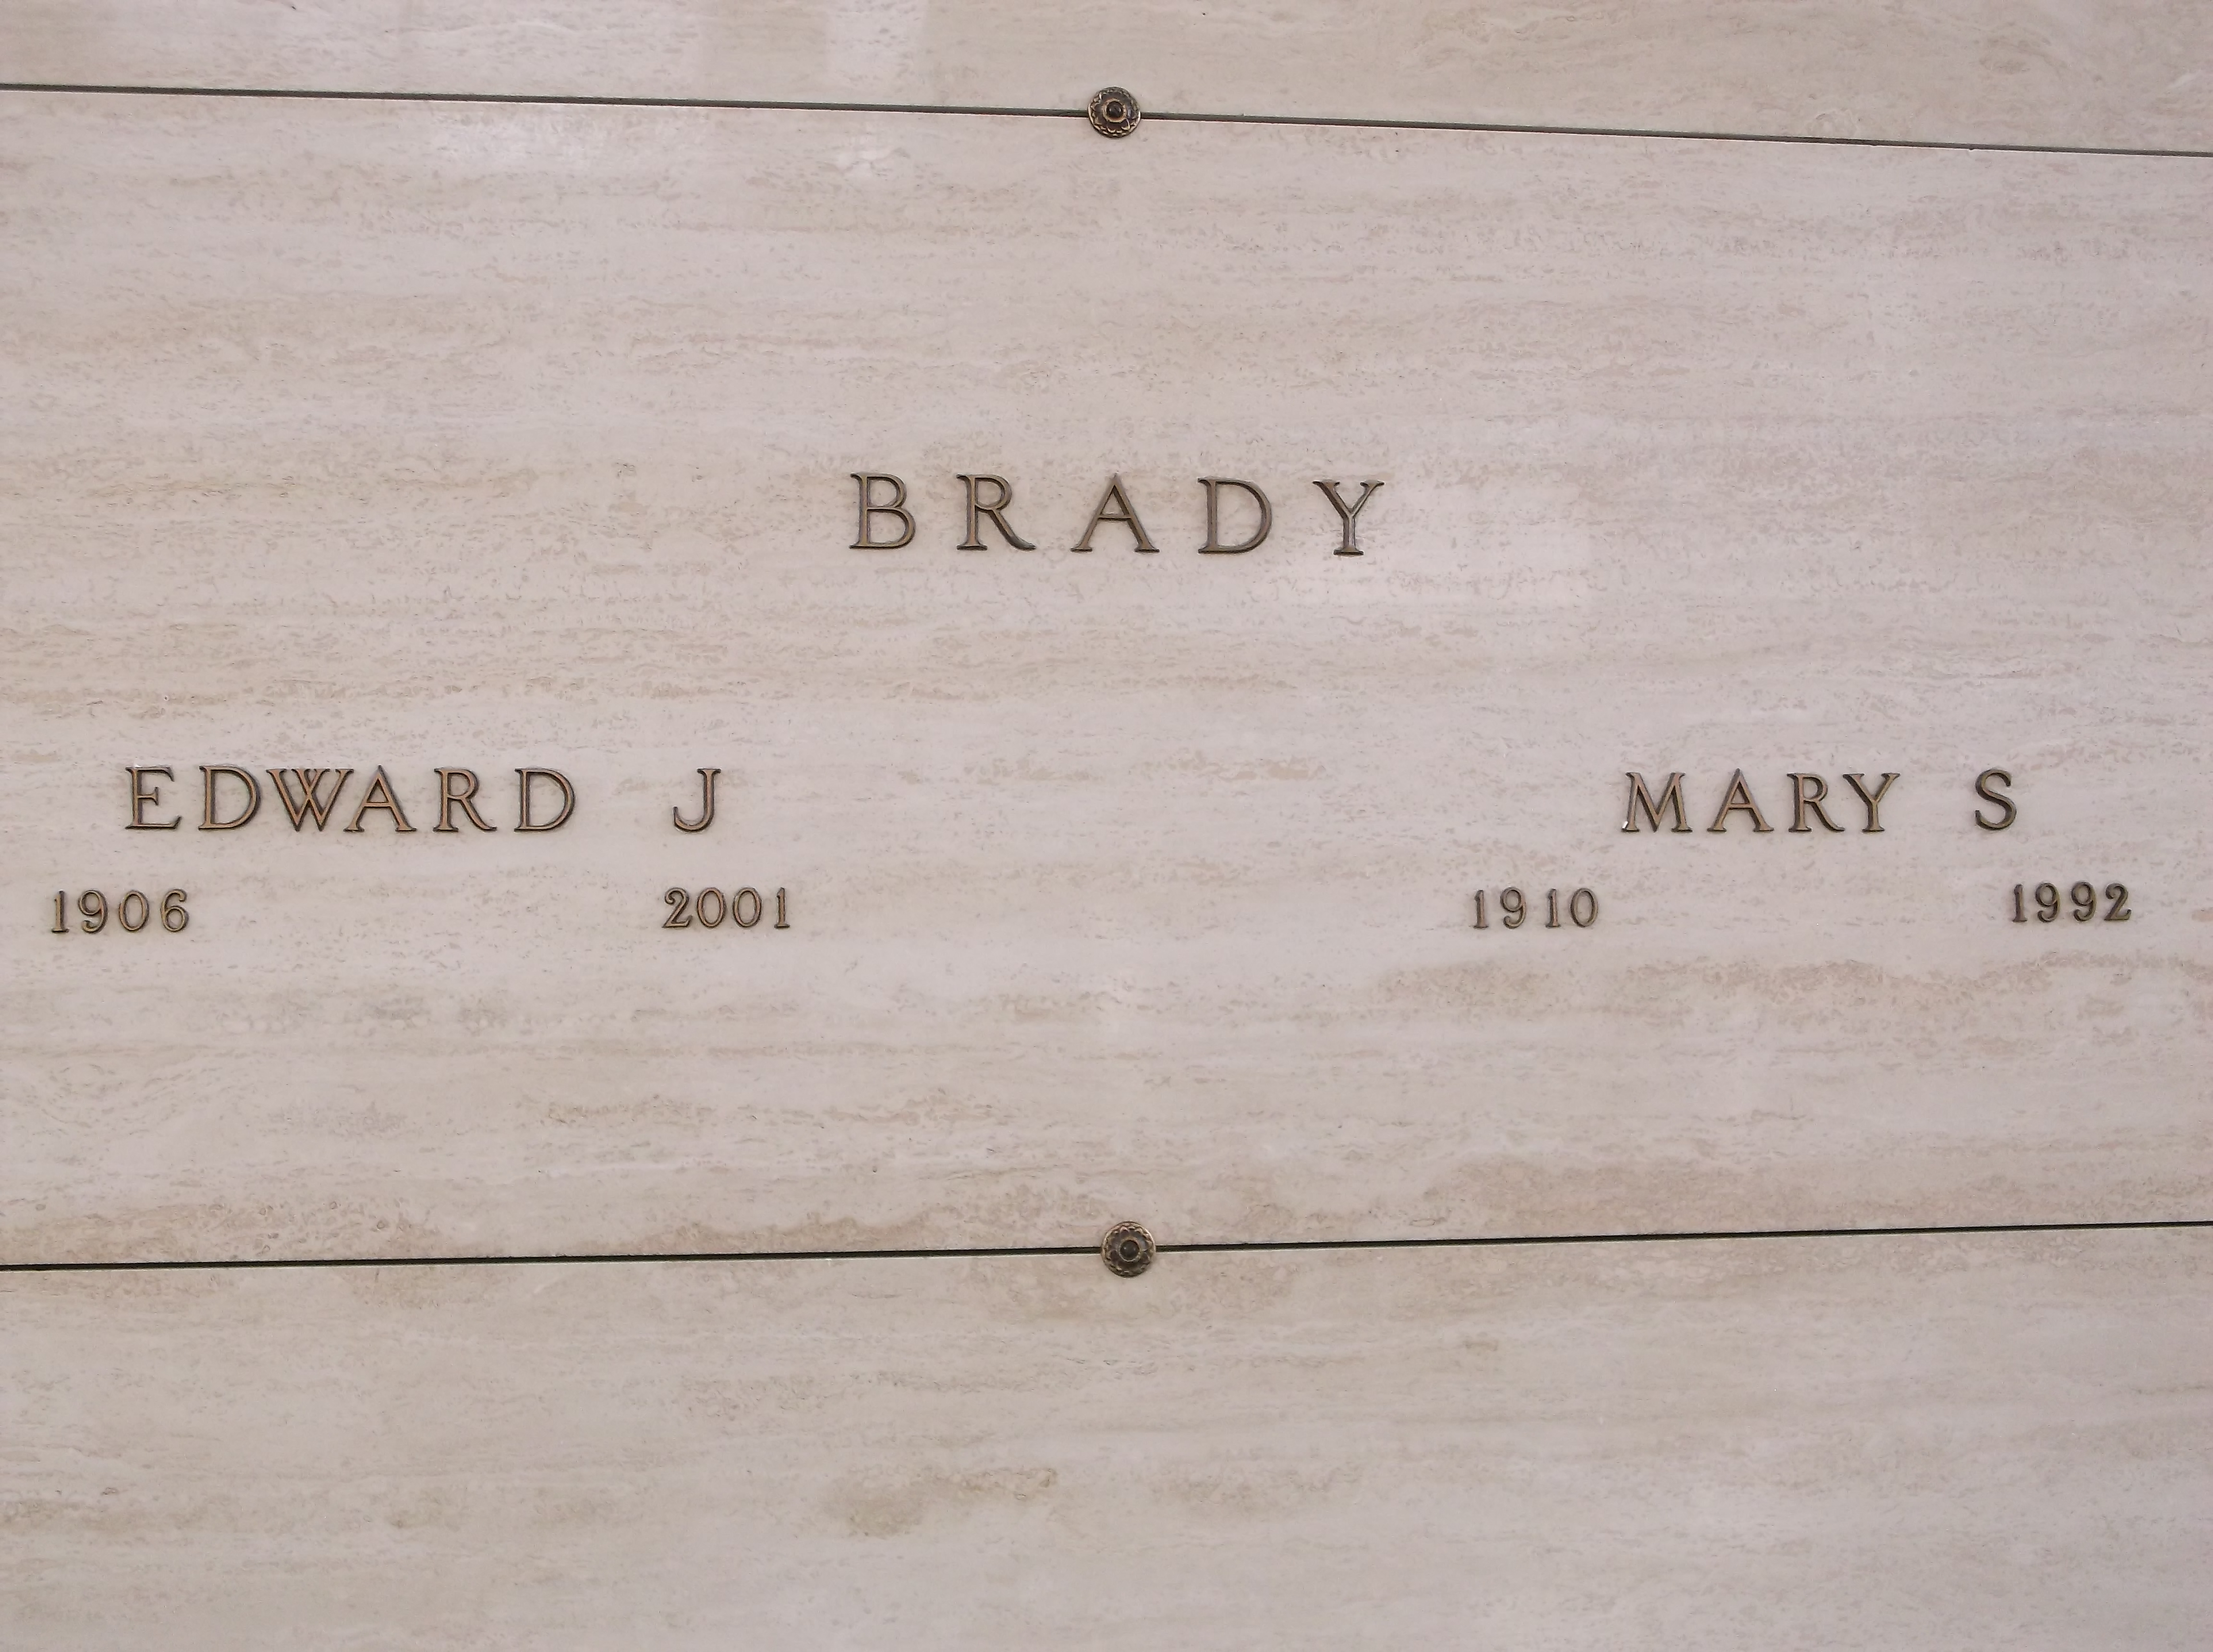 Mary S Brady